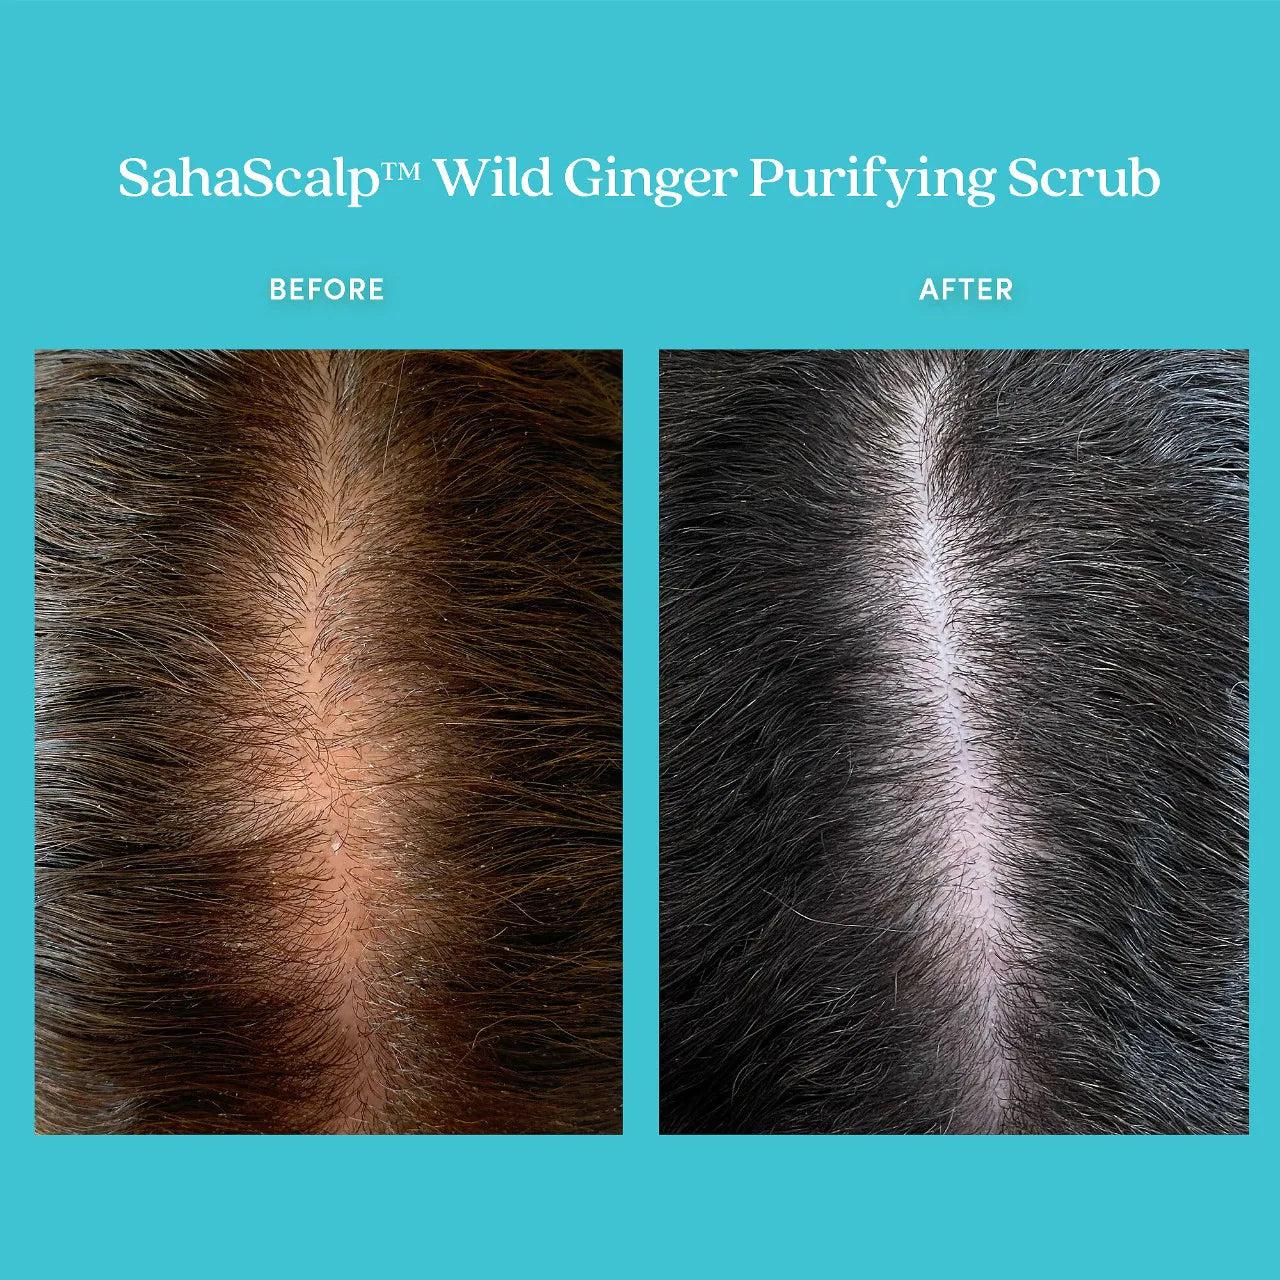 Fable & Mane - SahaScalp Wild Ginger Purifying Scrub | 237 mL